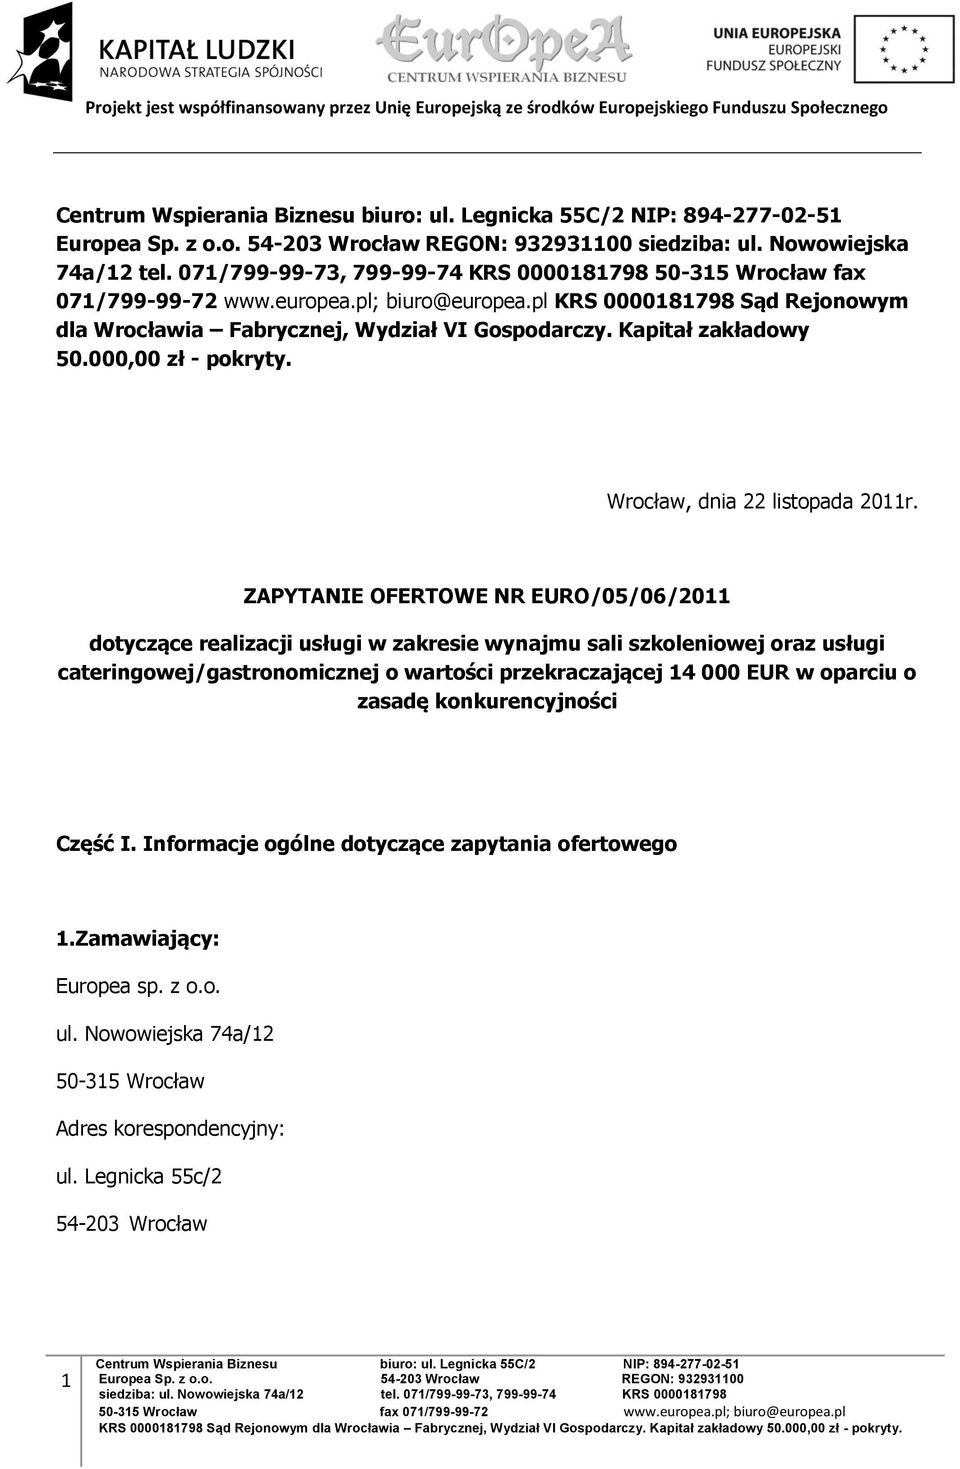 ZAPYTANIE OFERTOWE NR EURO/05/06/2011 dotyczące realizacji usługi w zakresie wynajmu sali szkoleniowej oraz usługi cateringowej/gastronomicznej o wartości przekraczającej 14